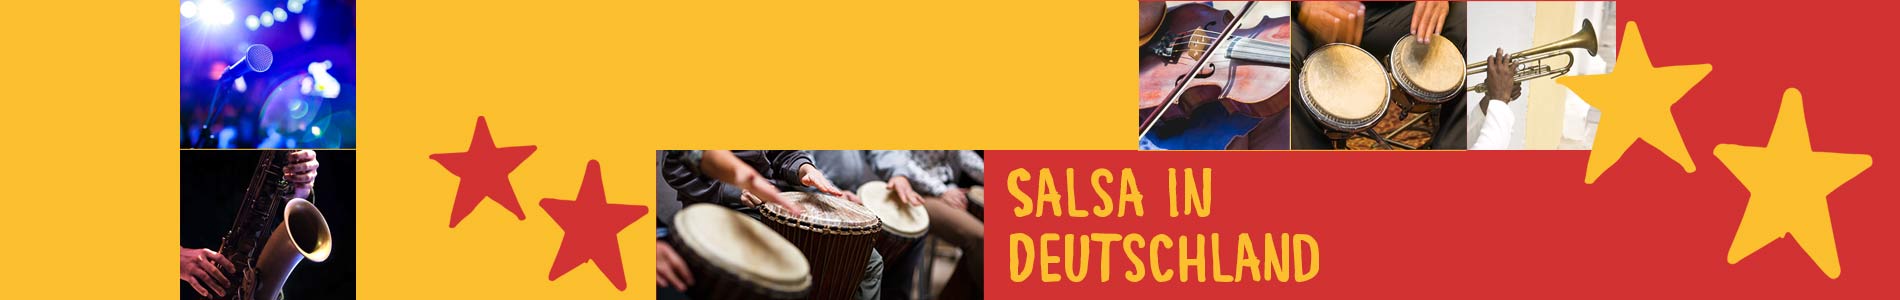 Salsa in Breklum – Salsa lernen und tanzen, Tanzkurse, Partys, Veranstaltungen